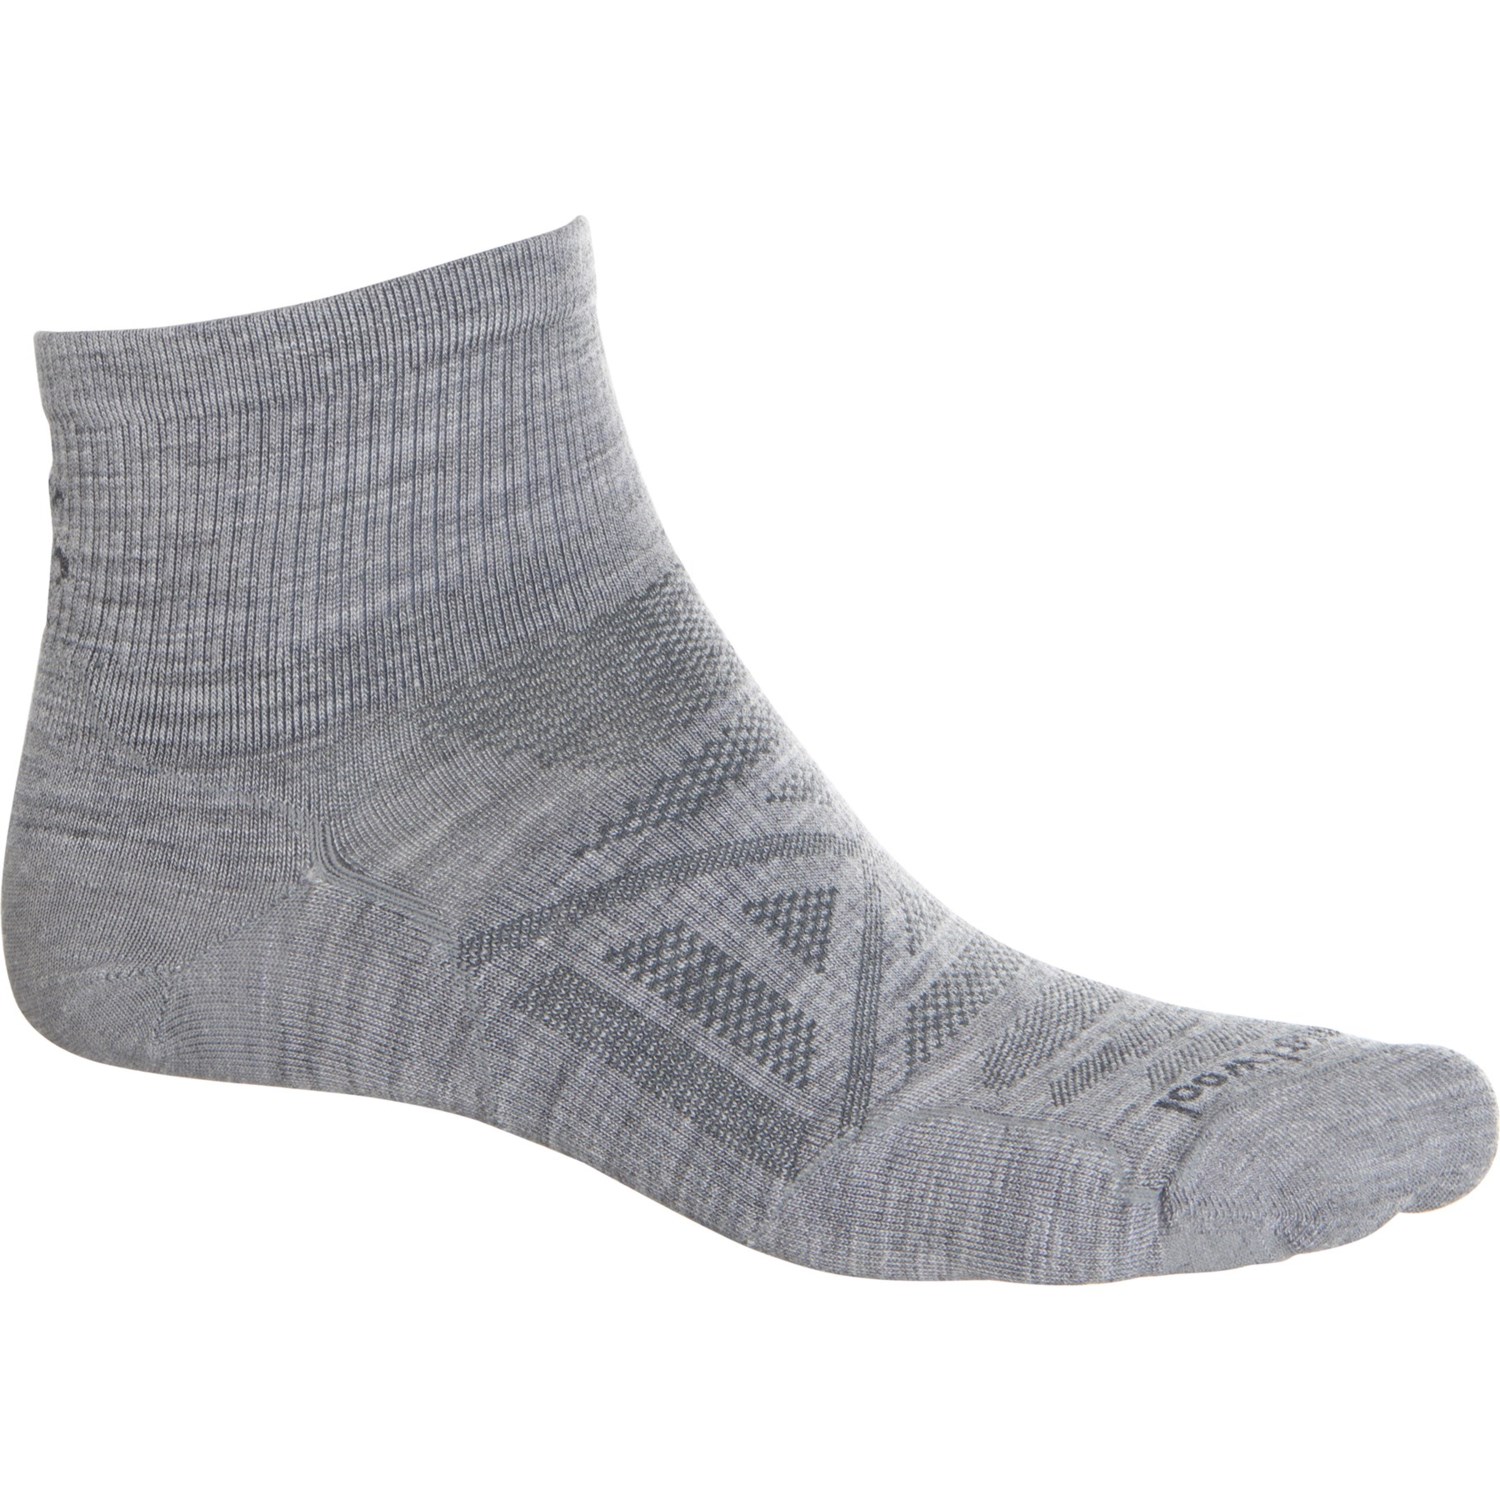 mens wool ankle socks